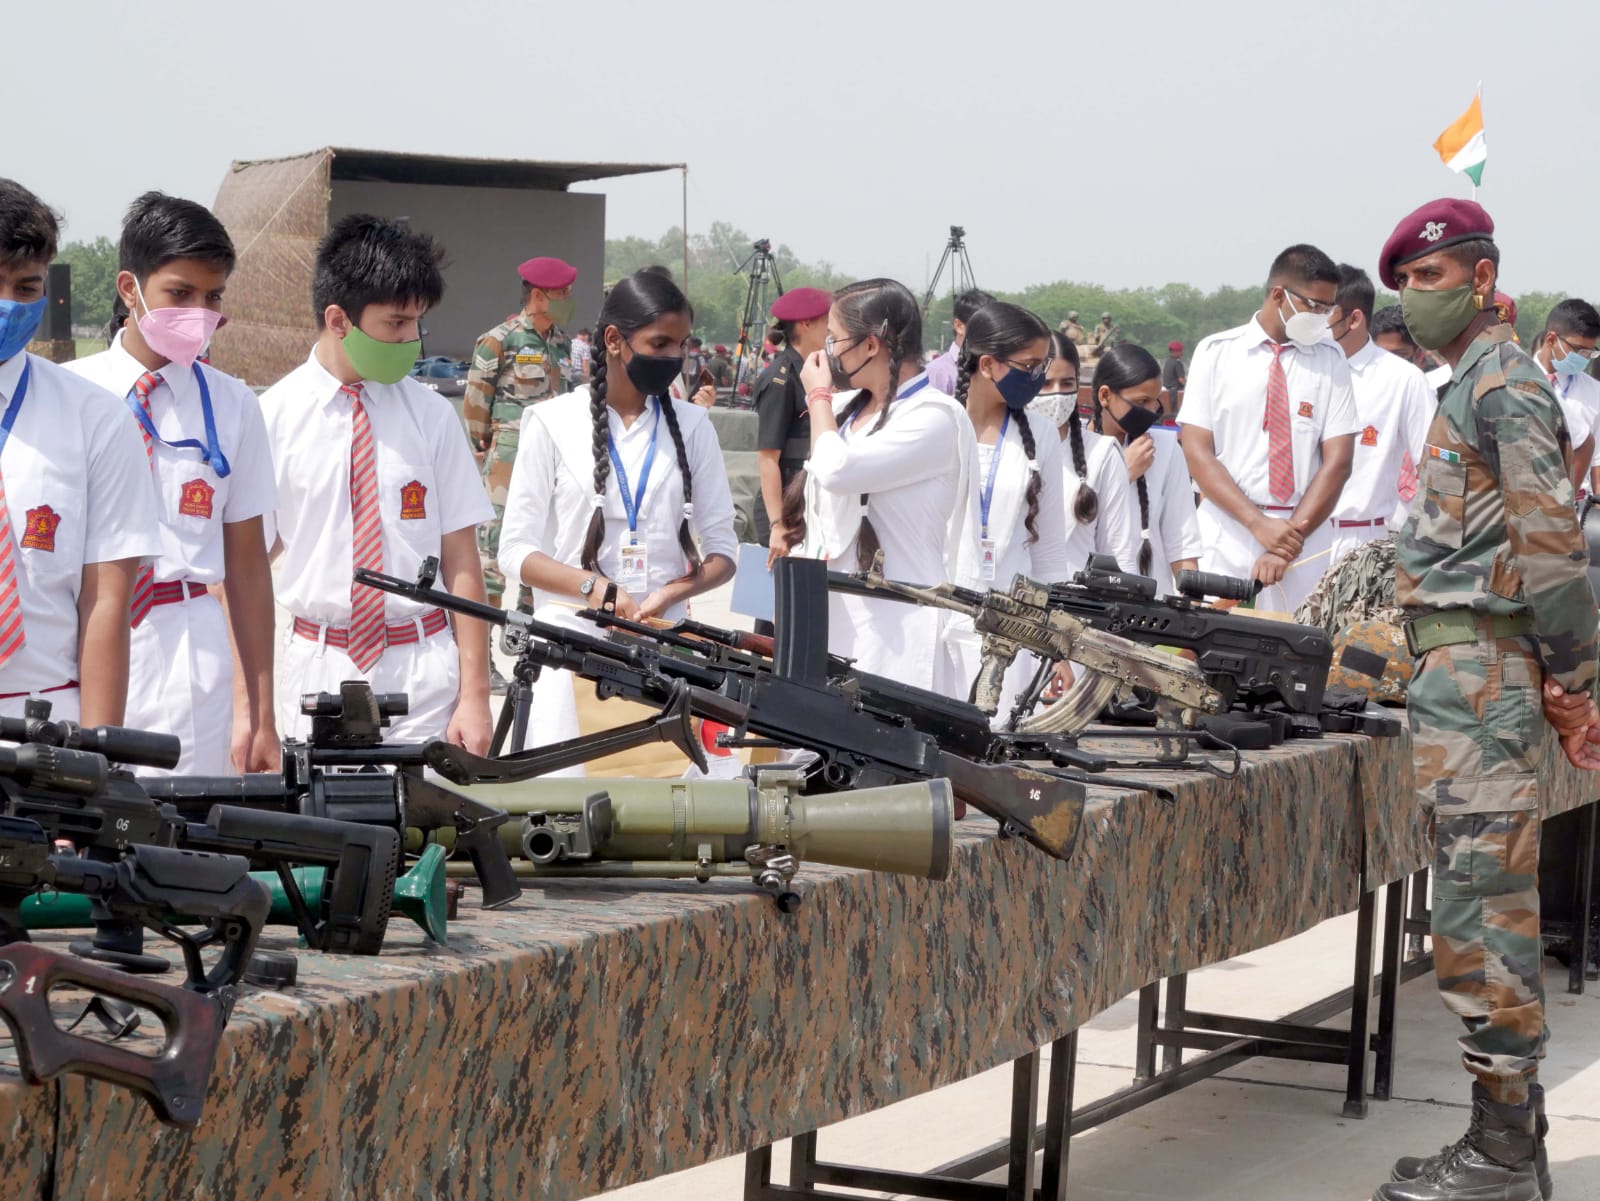 सेना के हथियारों को देखते स्कूली छात्र-छात्राएं.